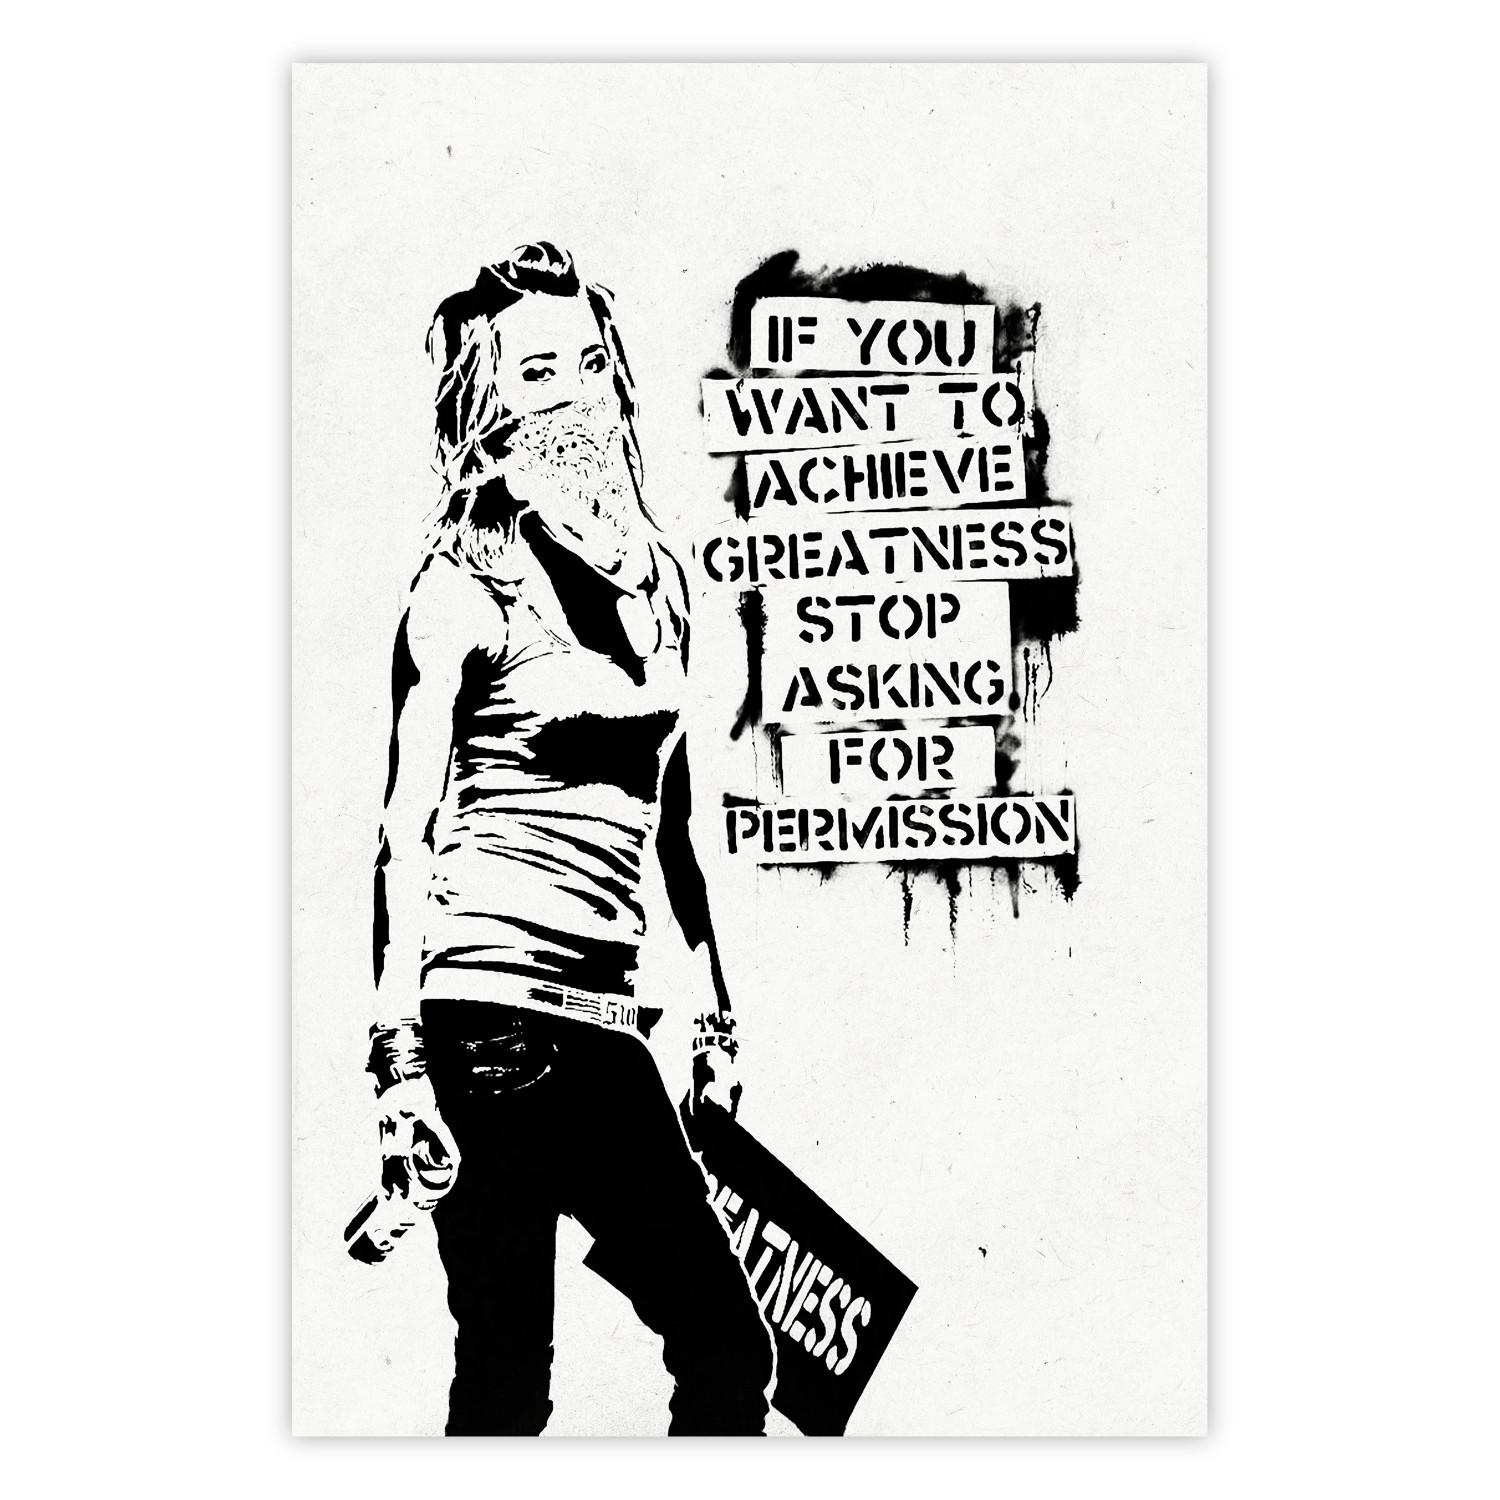 Cartel Chica con graffiti - composición en blanco y negro con mujer y textos